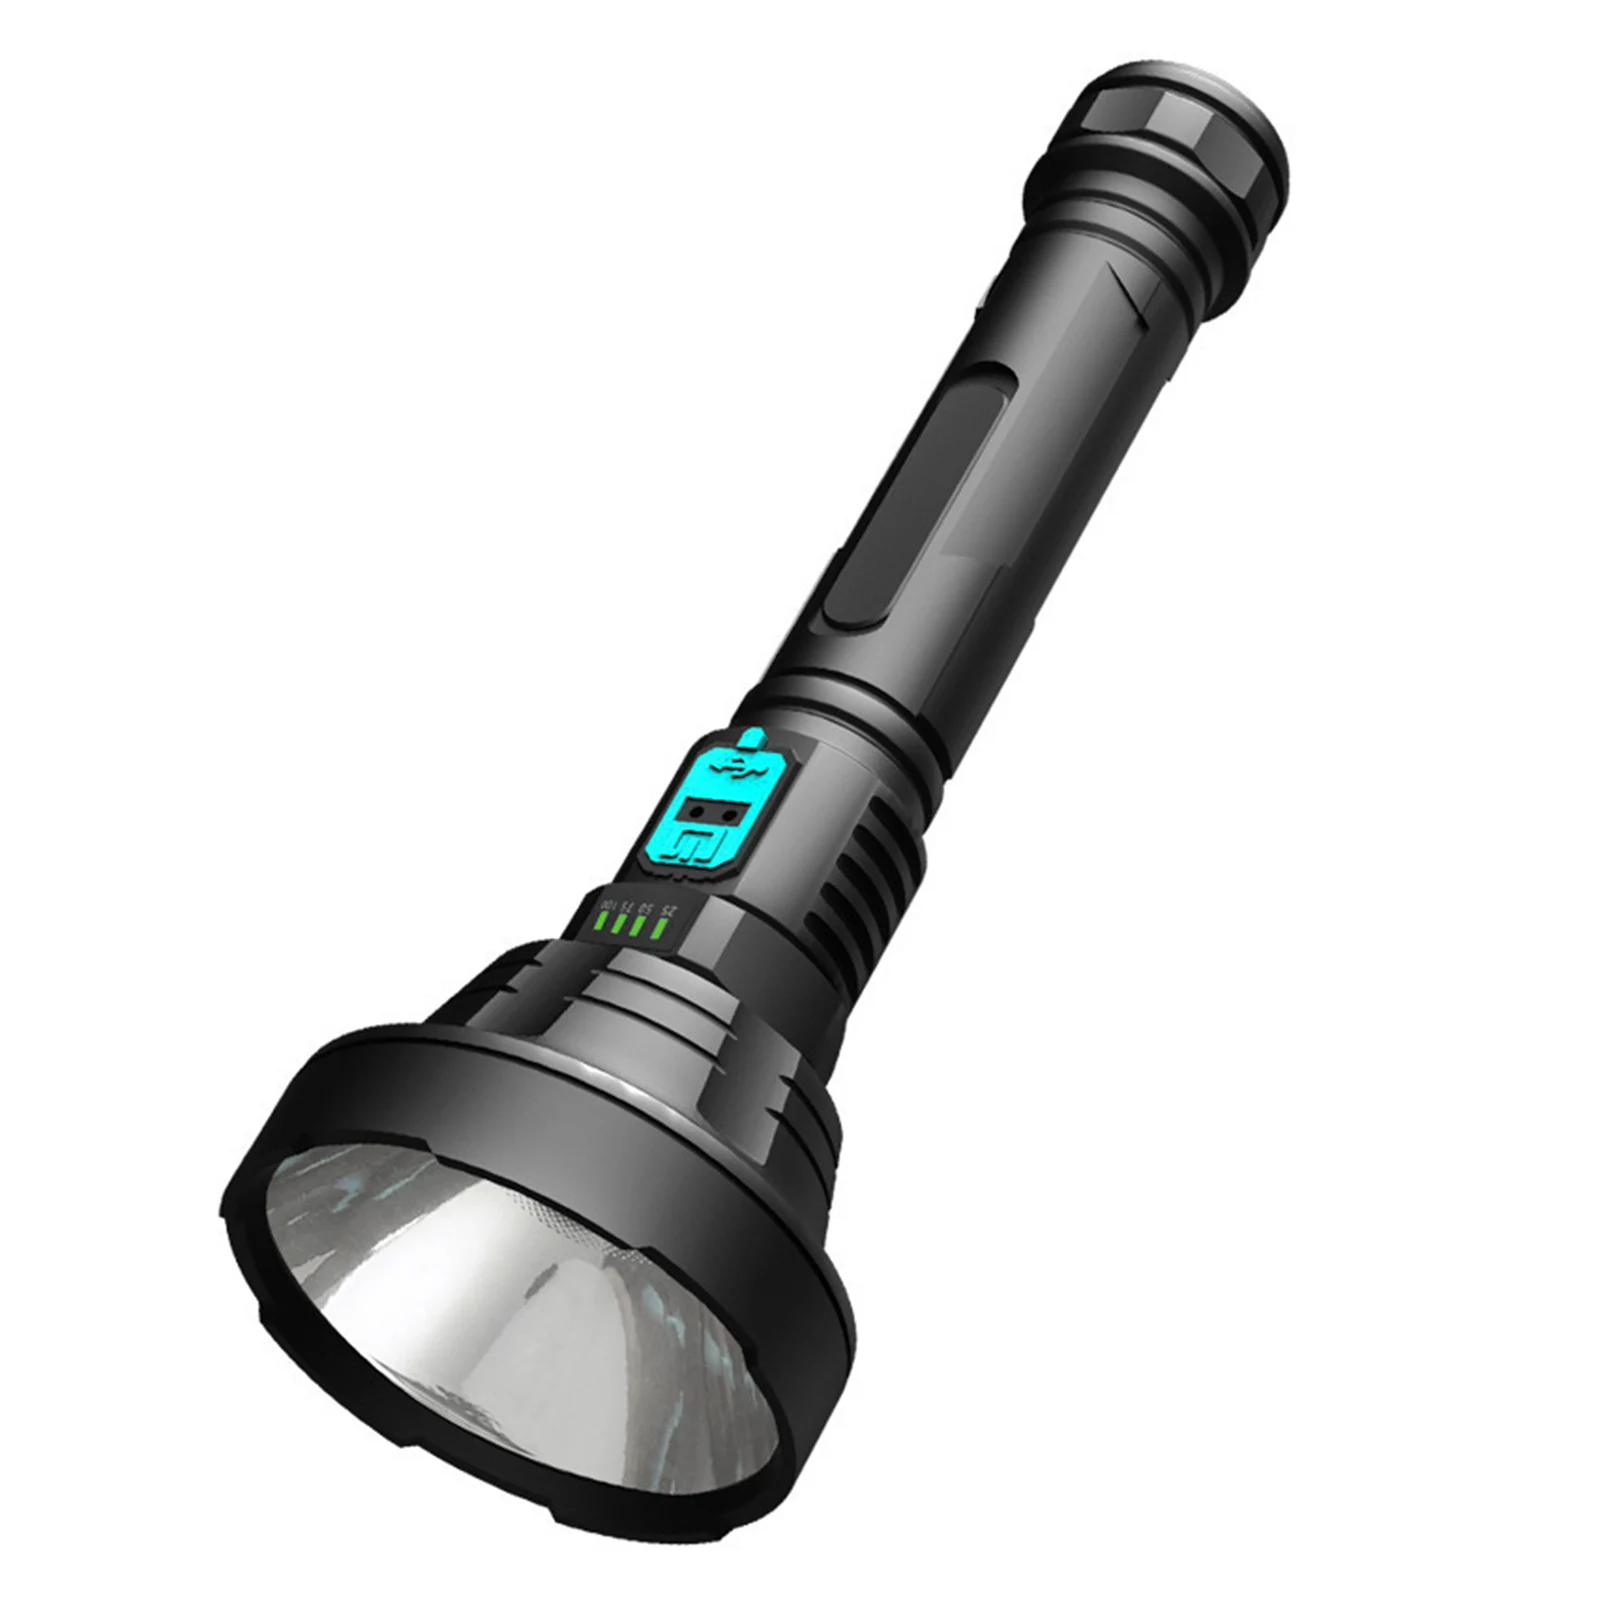 

Уличная сильный светильник 3 Вт, фонарик, водонепроницаемая ручная вспышка, USB-зарядка, дисплей мощности, уличный светильник, фонарик